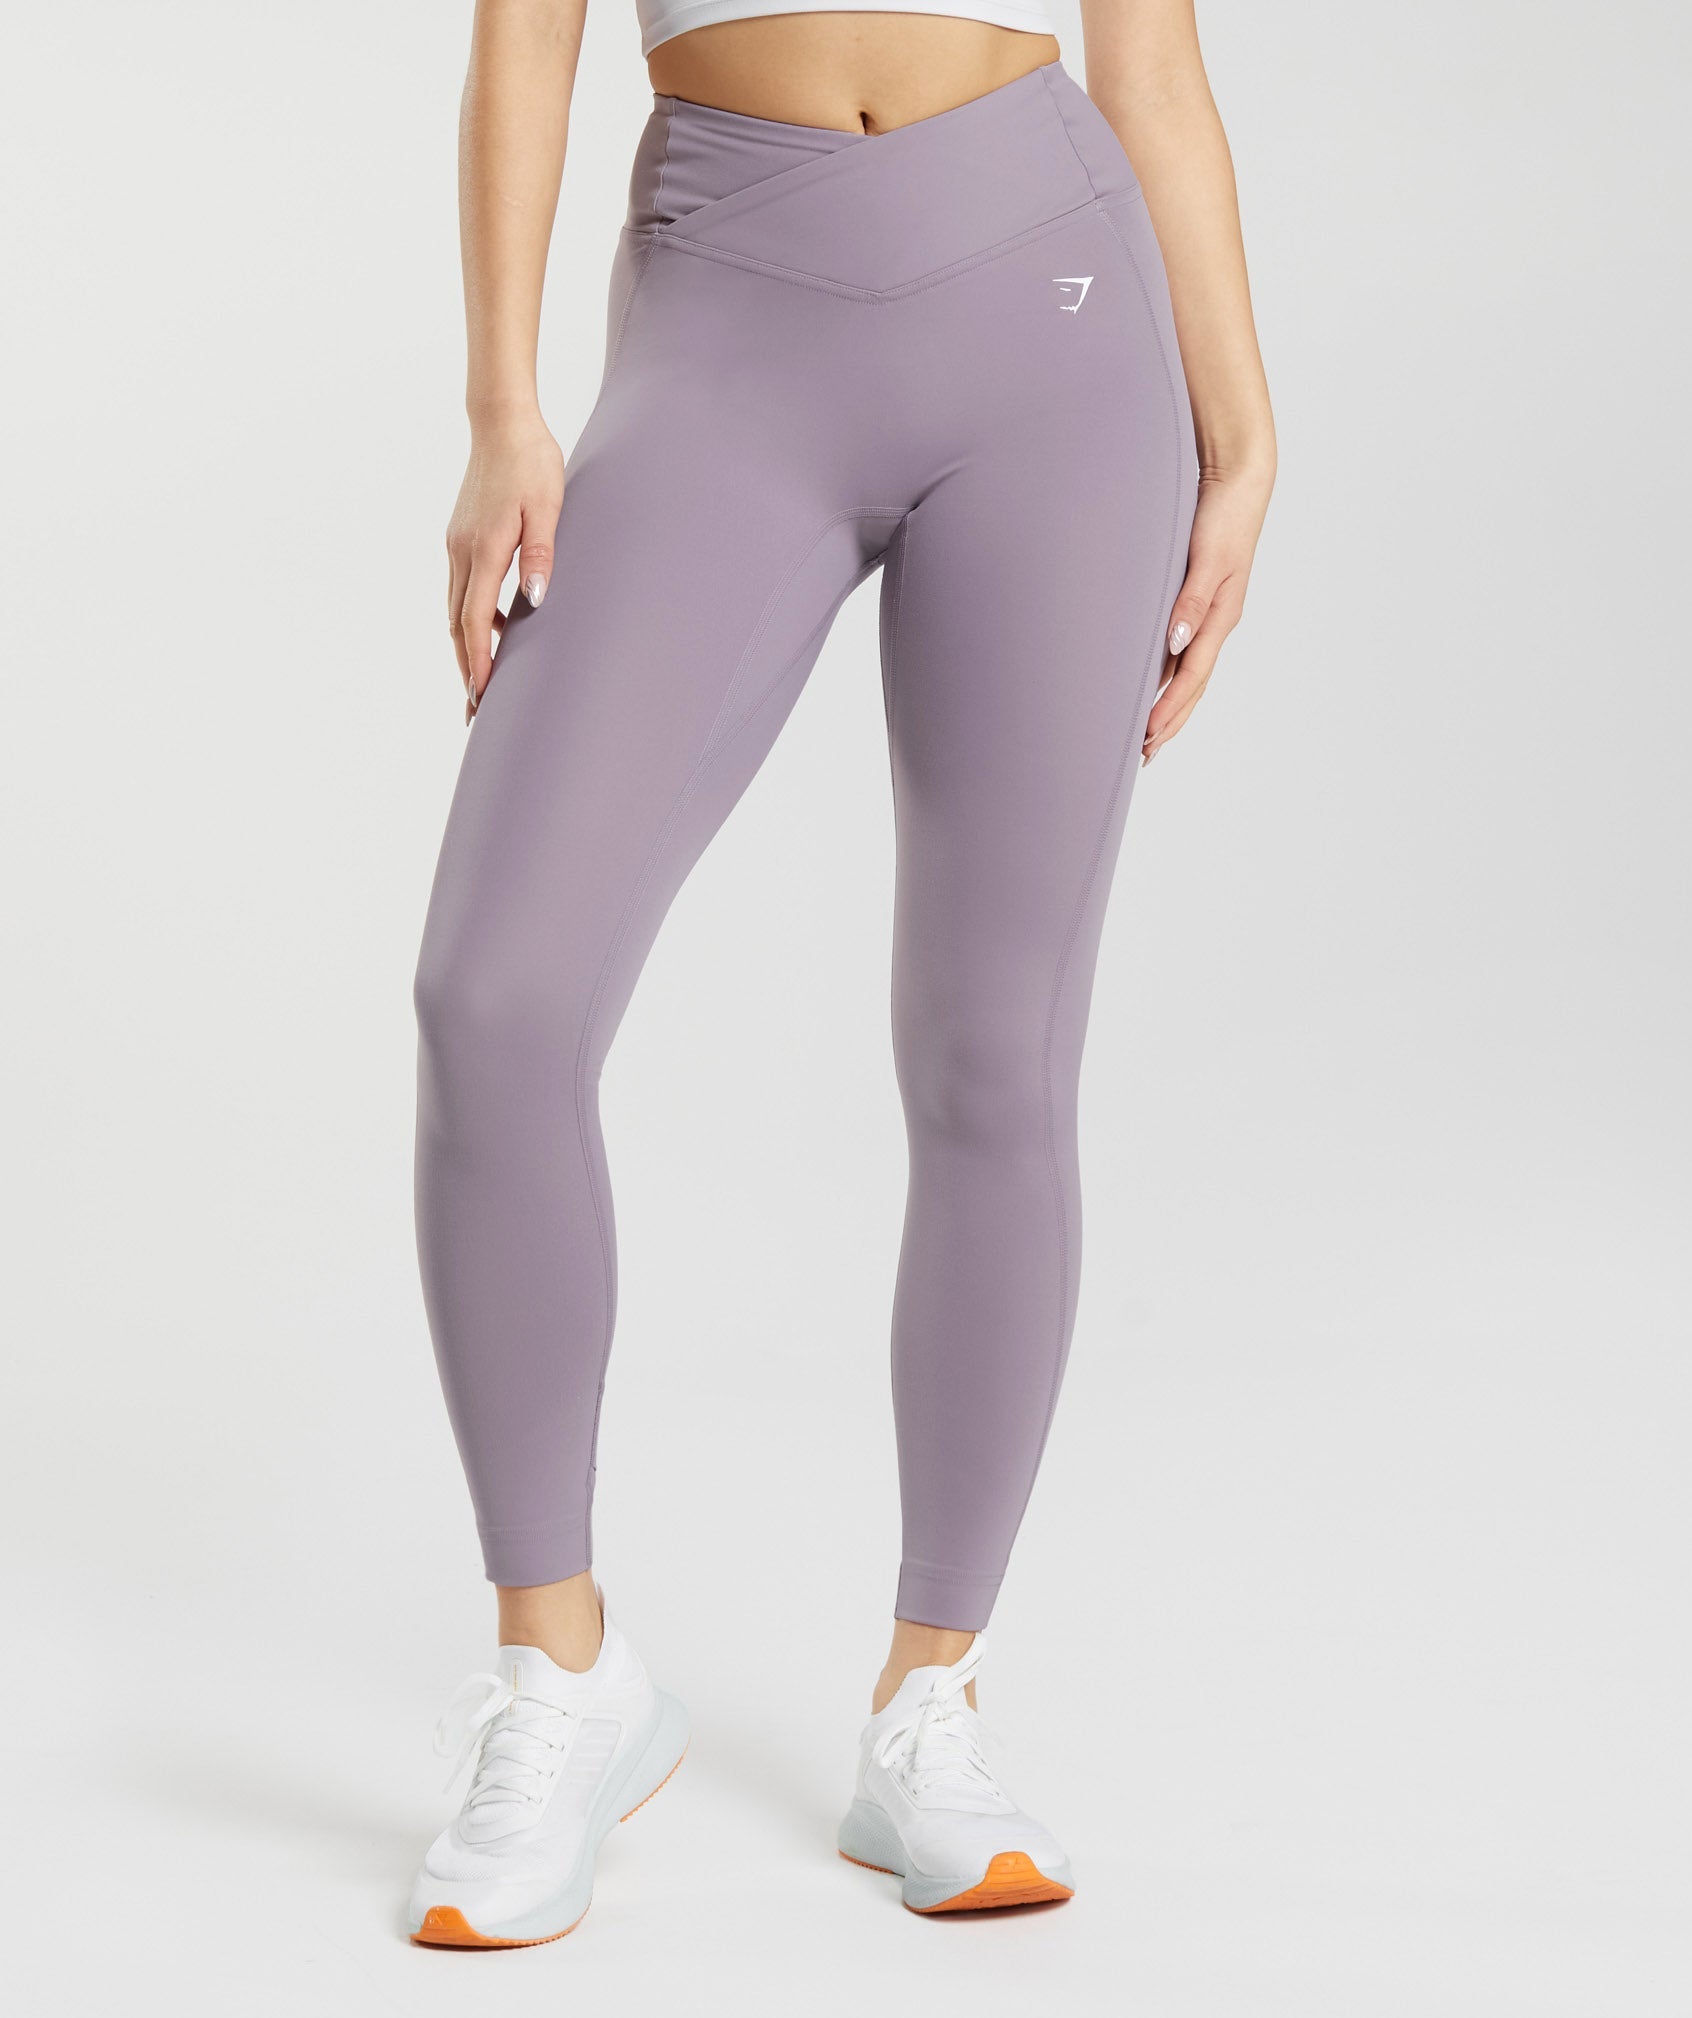 Gymshark Original Limited Addition Lavender Camo Leggings Medium NWOT